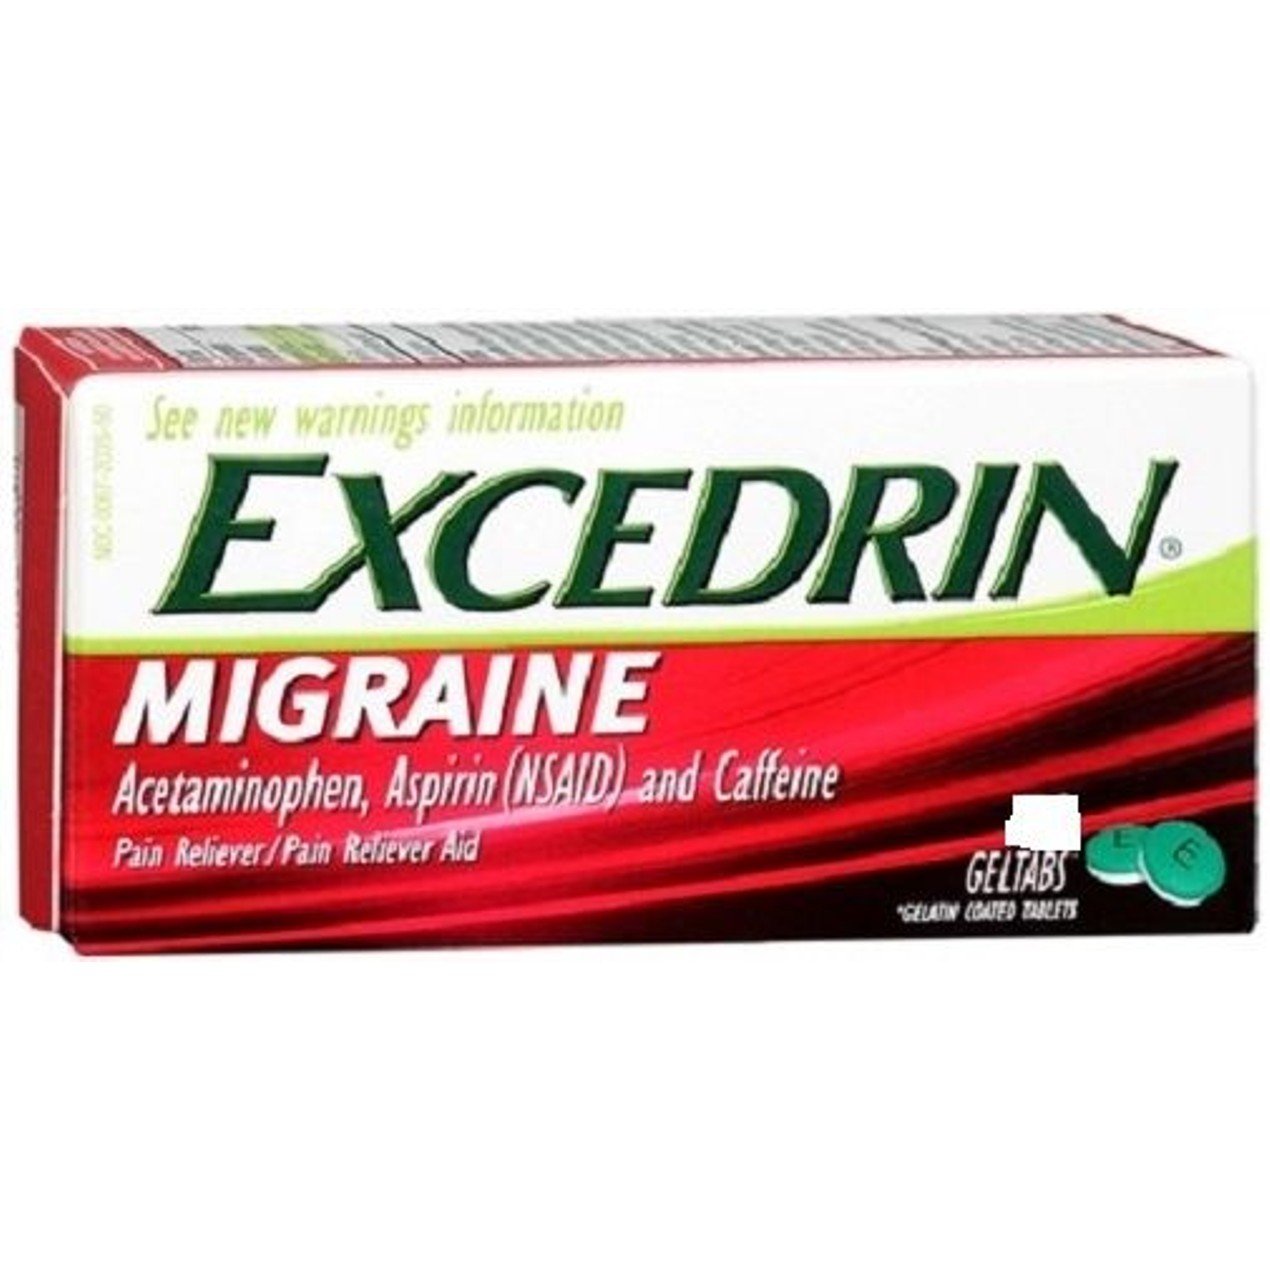 Excedrin Migraine Pain Reliever Gel Tabs 80 Count Bottle ...